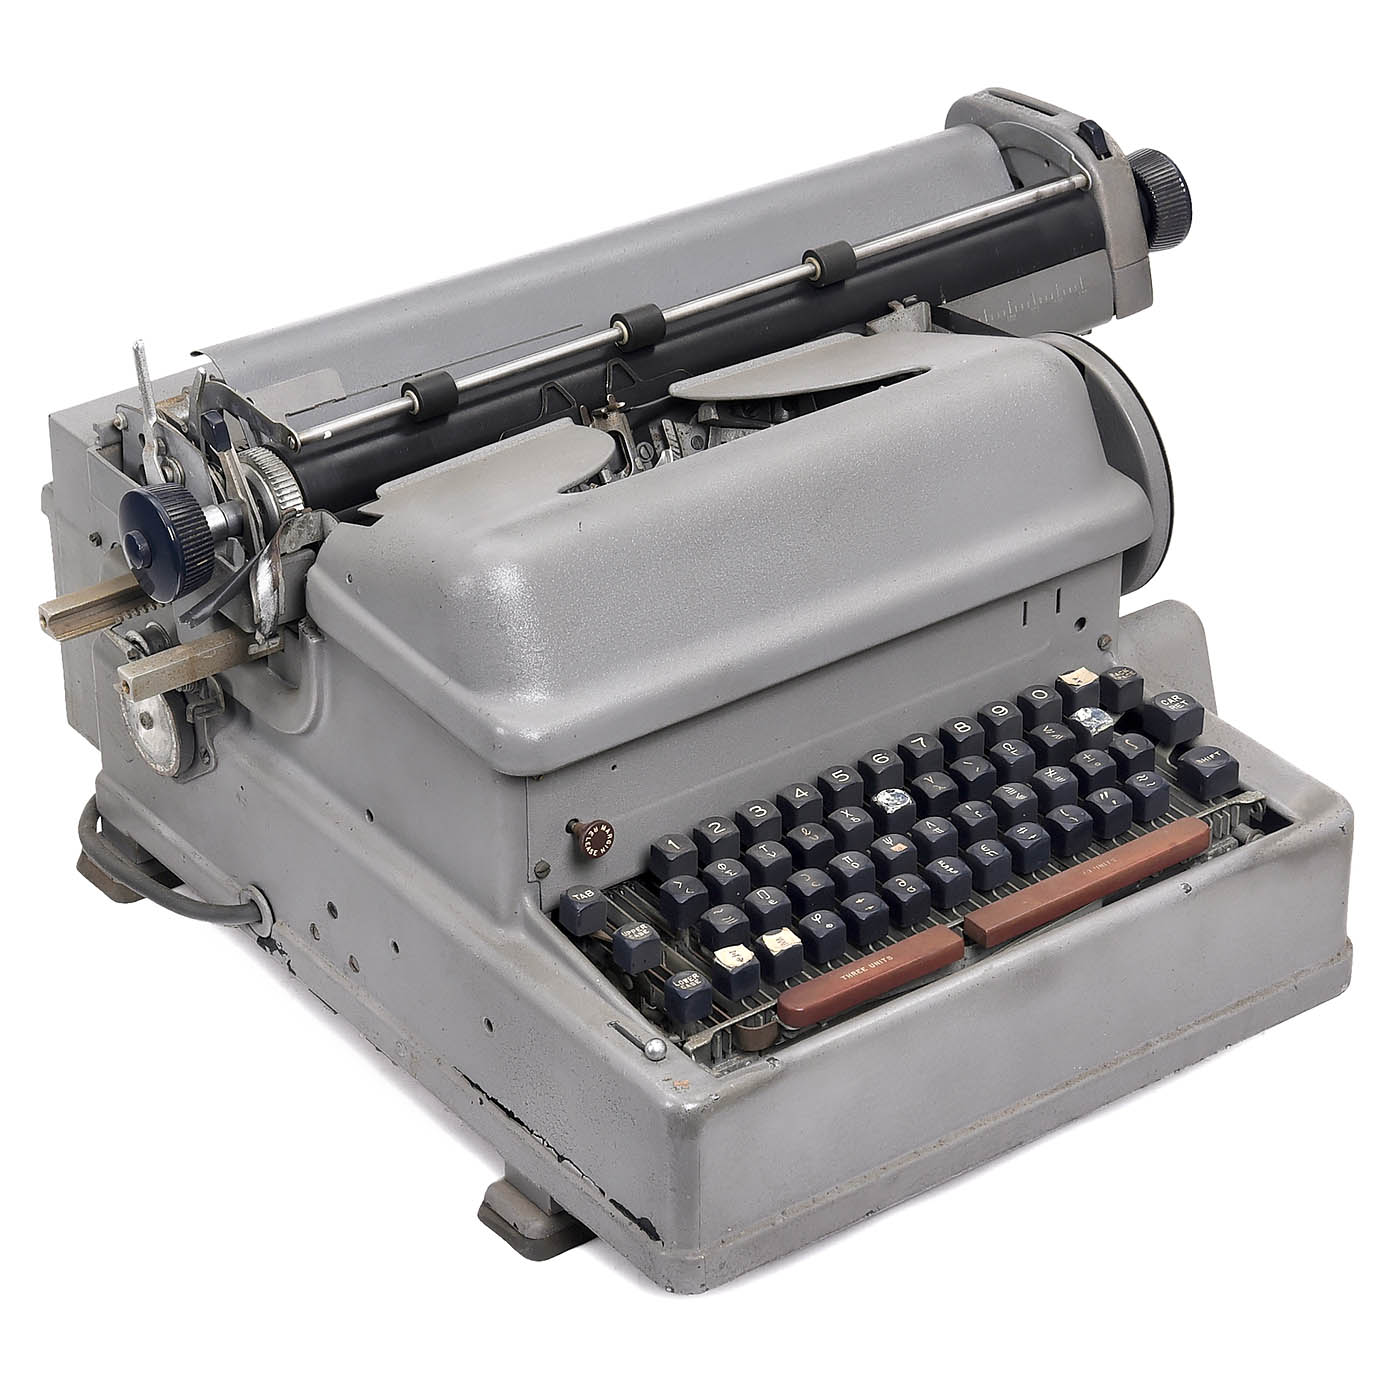 2 IBM Electric Typewriters - Image 3 of 5